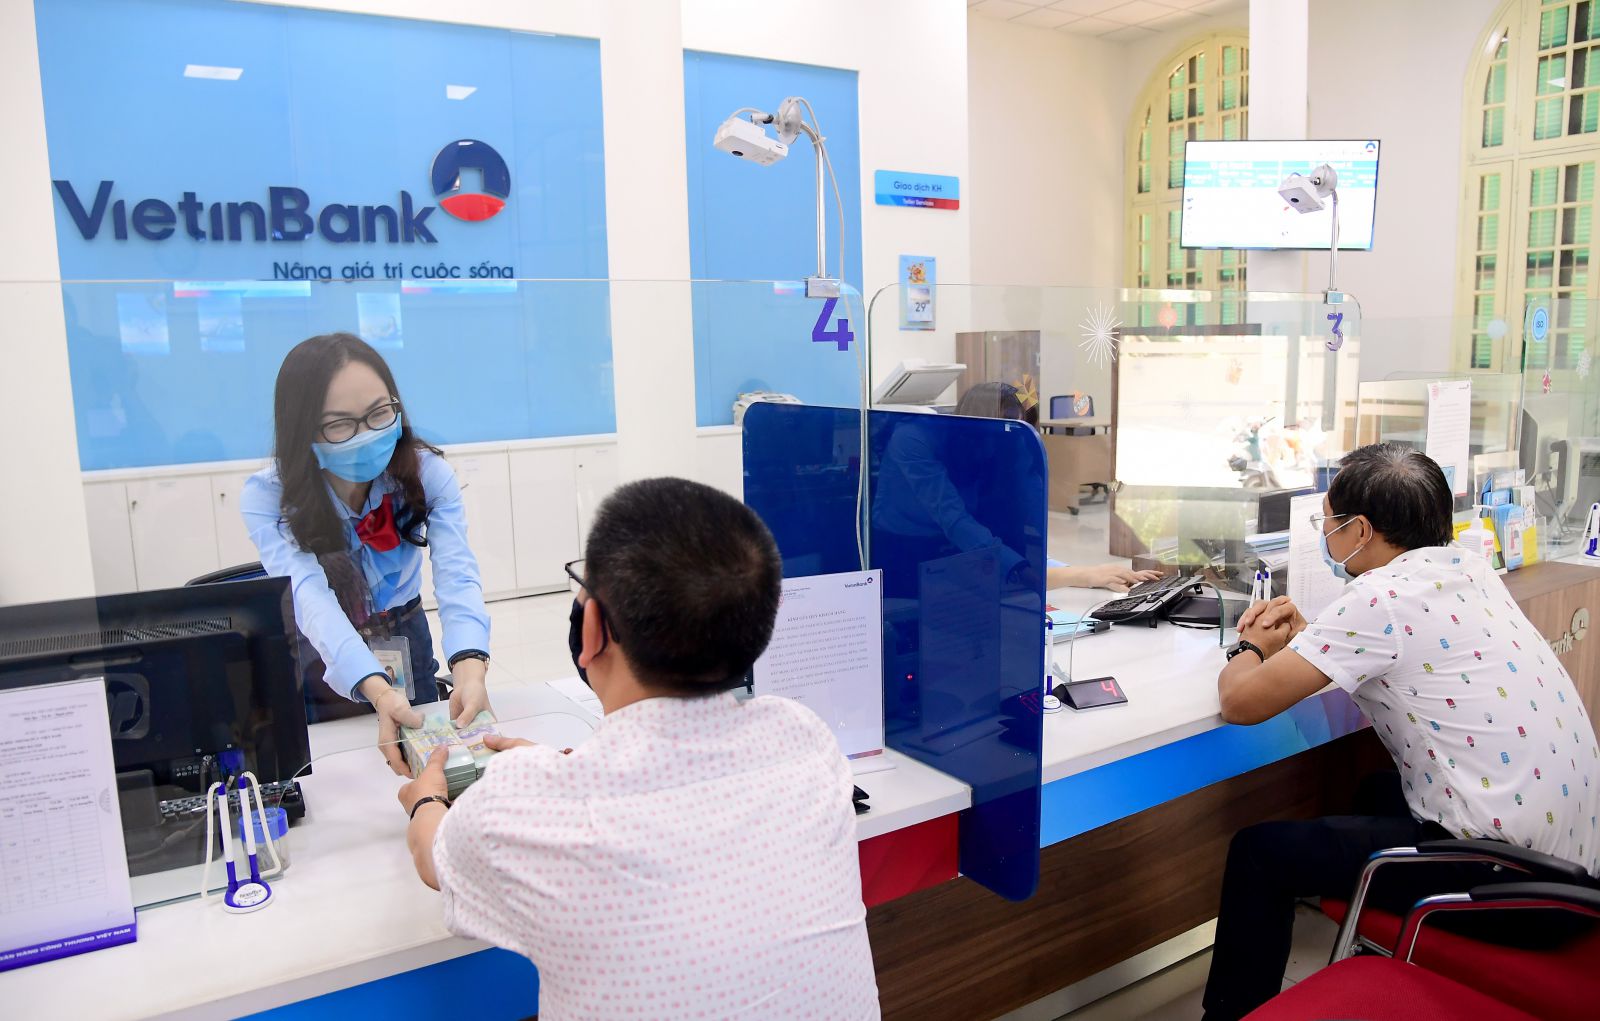 VietinBank đáp ứng đầy đủ nhu cầu vốn và dịch vụ ngân hàng chính đáng của doanh nghiệp, người dân và nền kinh tế